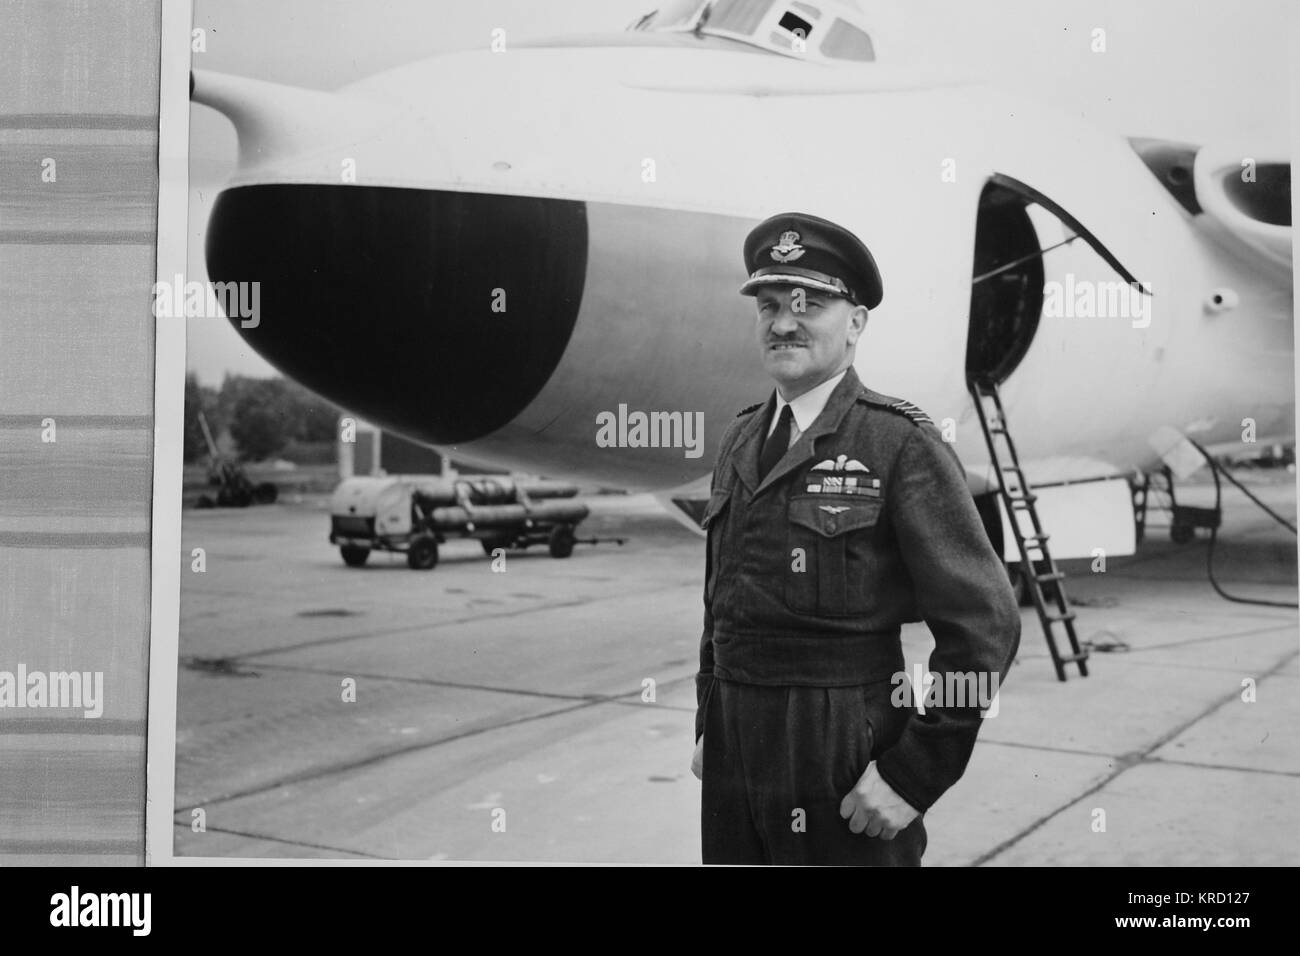 Le Capitaine John Groupe (Woodroffe c1914-1957), commandant de la station RAF Wittering. Il meurt dans un American B47 Stratojet survenu en octobre 1957 au cours d'une compétition de vol à Pinecastle AFB, en Floride, aux États-Unis. Vu ici en uniforme, debout sur un aérodrome avec un avion à l'arrière-plan. Banque D'Images